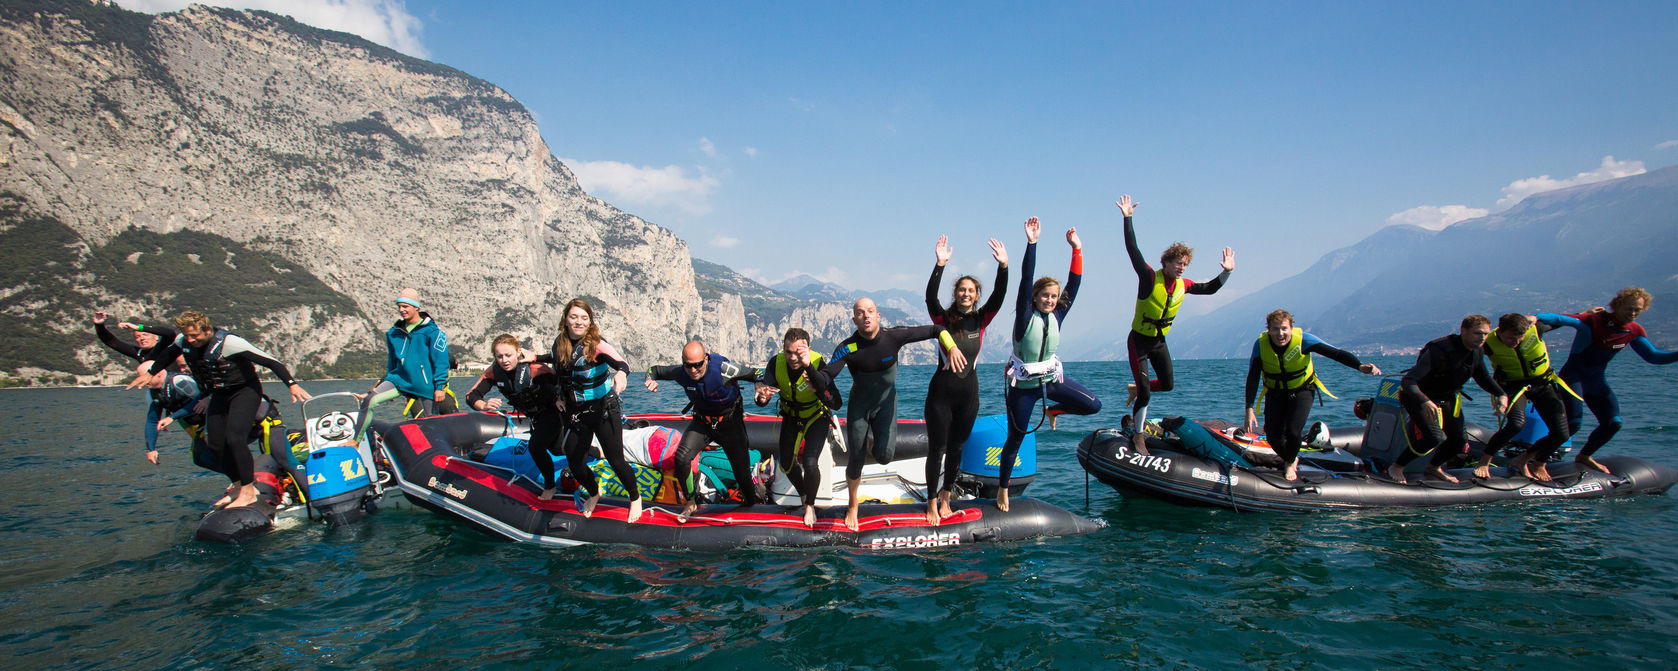 Kitesurfing school Lake Garda Italy